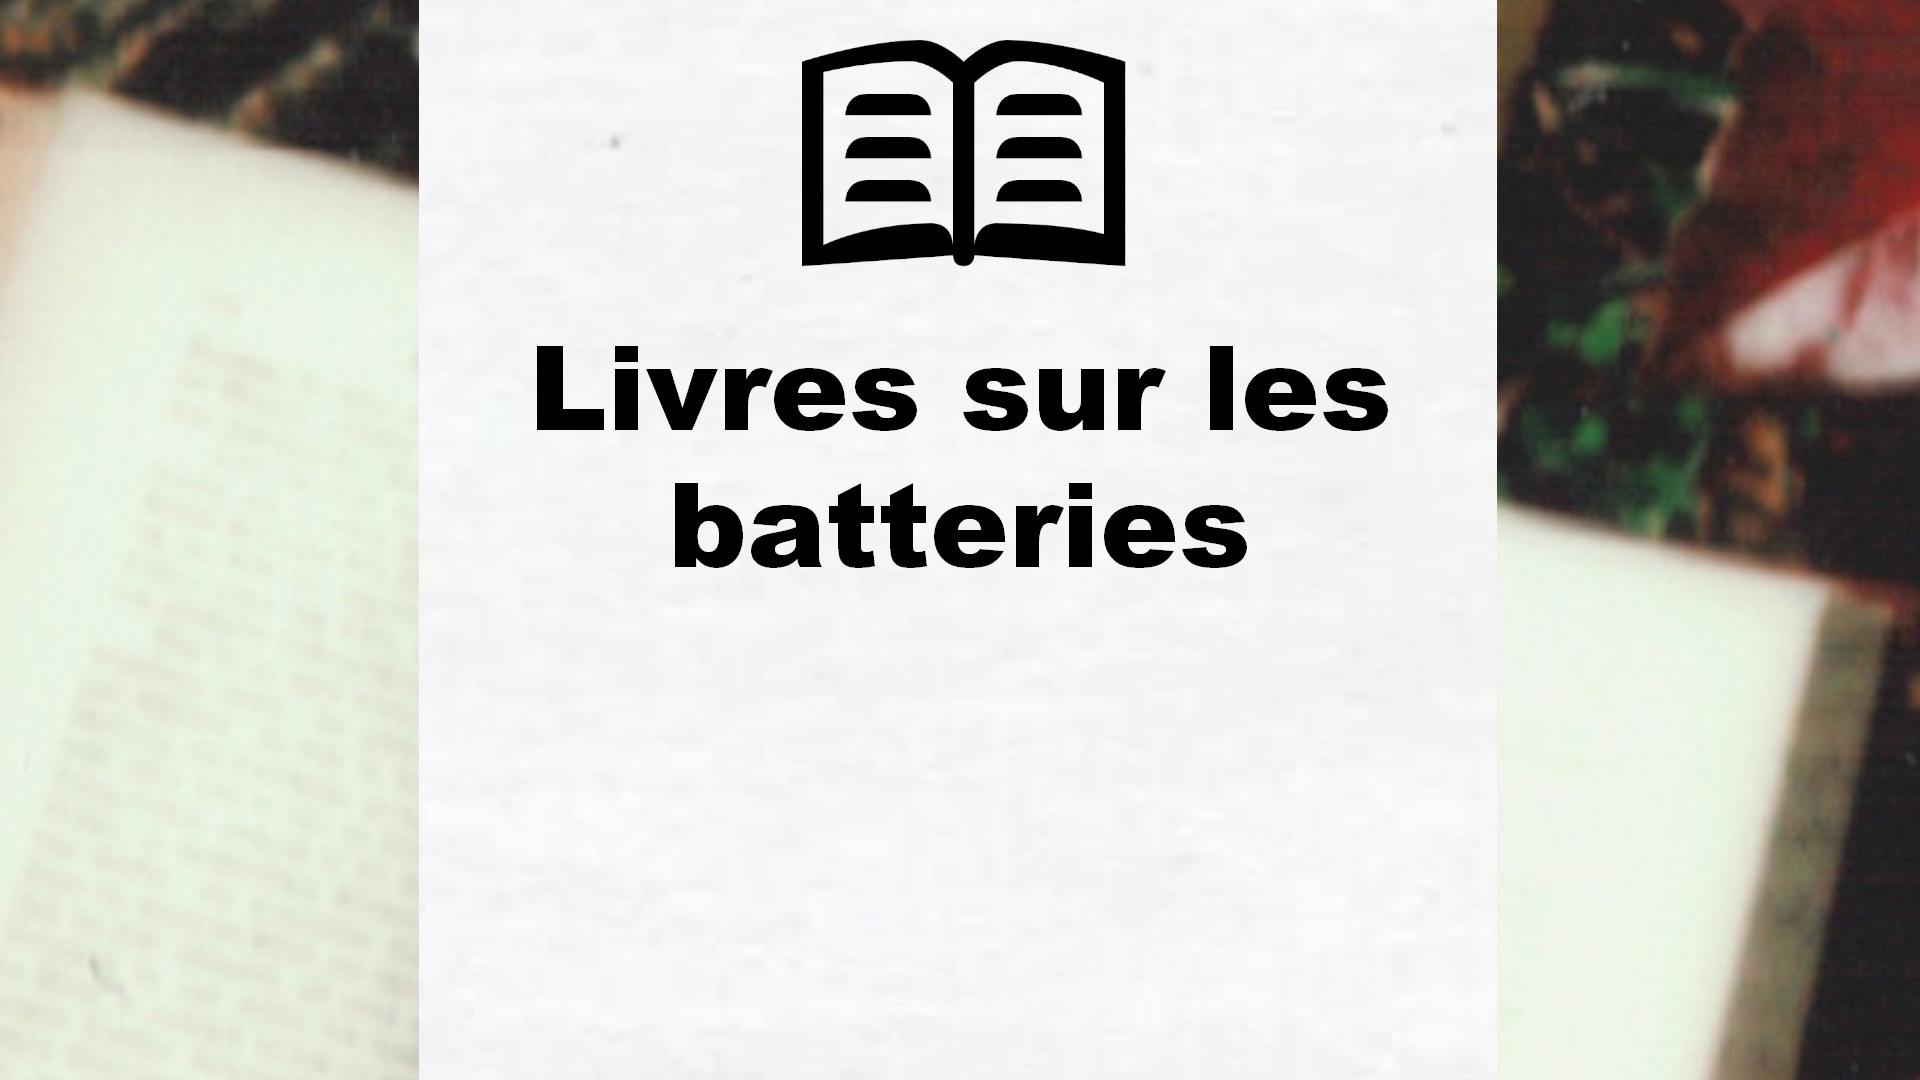 Livres sur les batteries